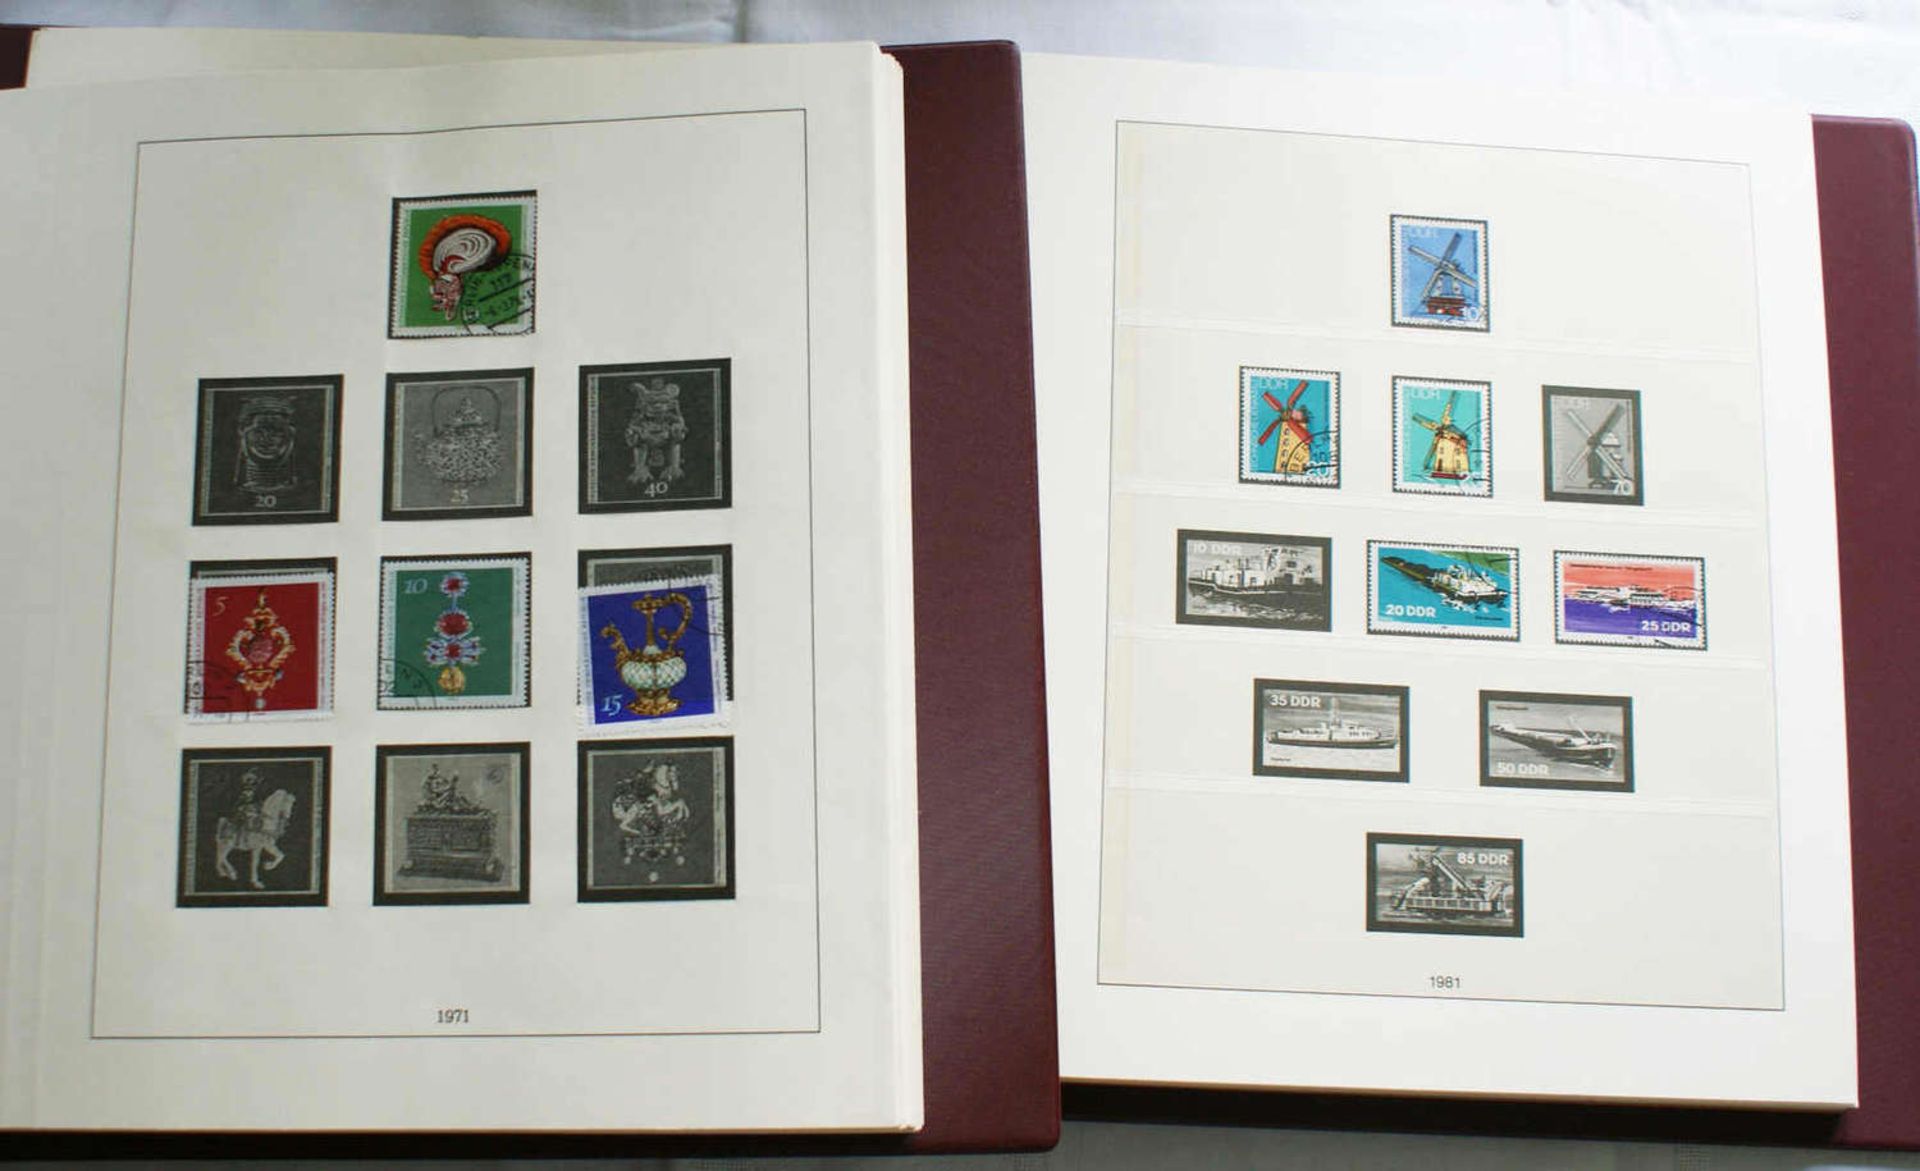 4 Vordruck Alben, 3x DDR, sowie 1x BRD. 1969-1990, meist gefüllt, sauber gesammelt.